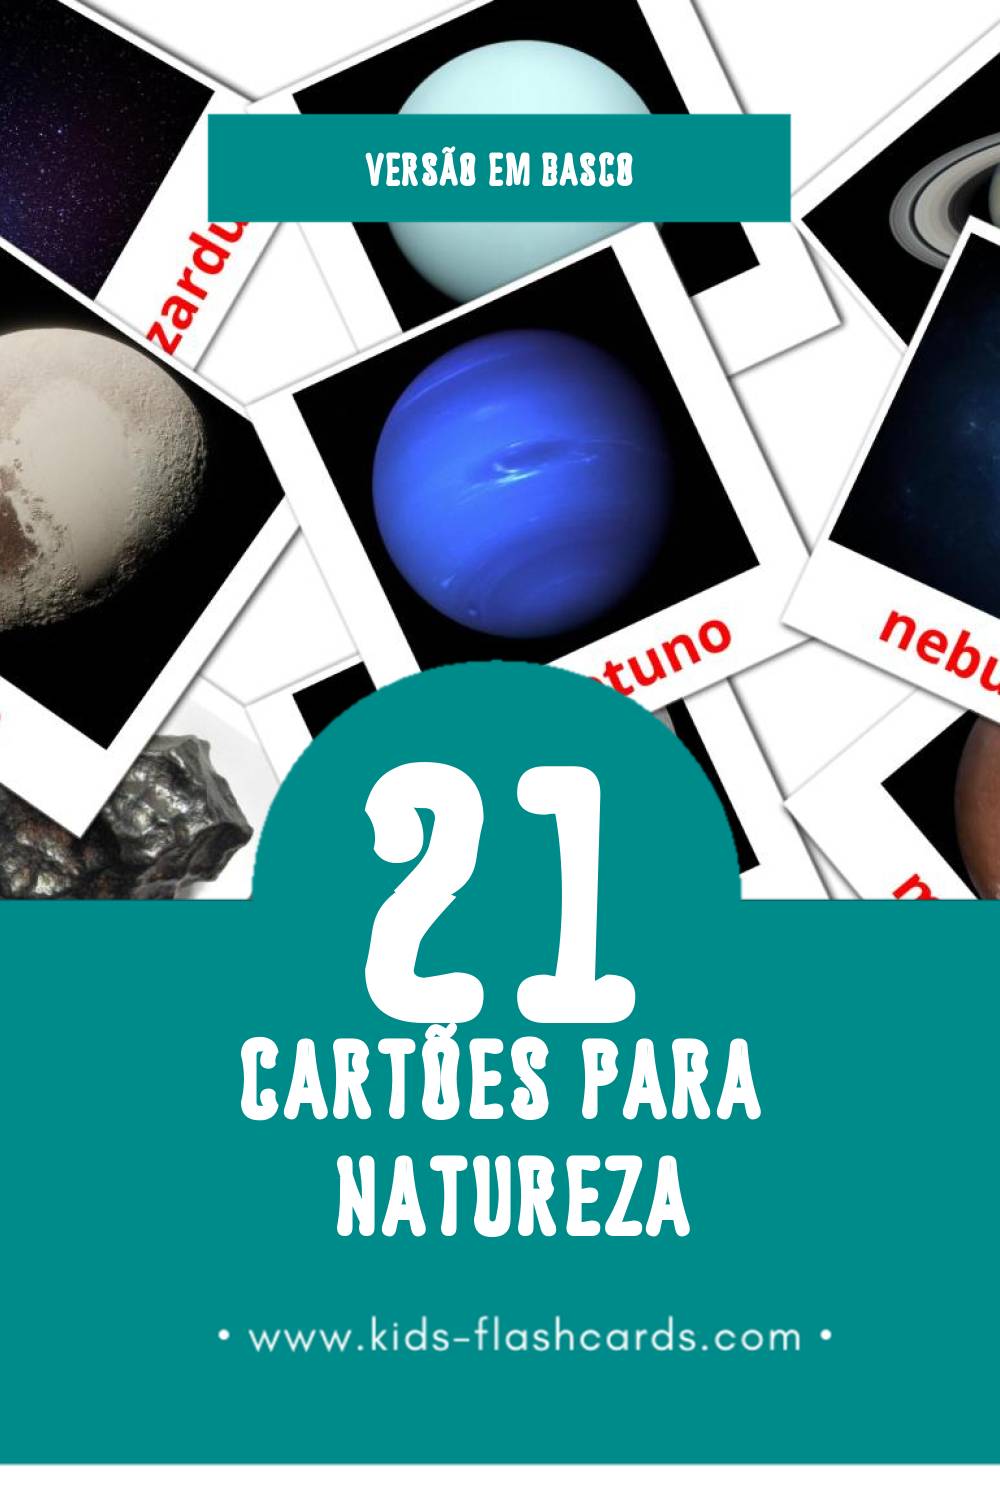 Flashcards de natura Visuais para Toddlers (21 cartões em Basco)